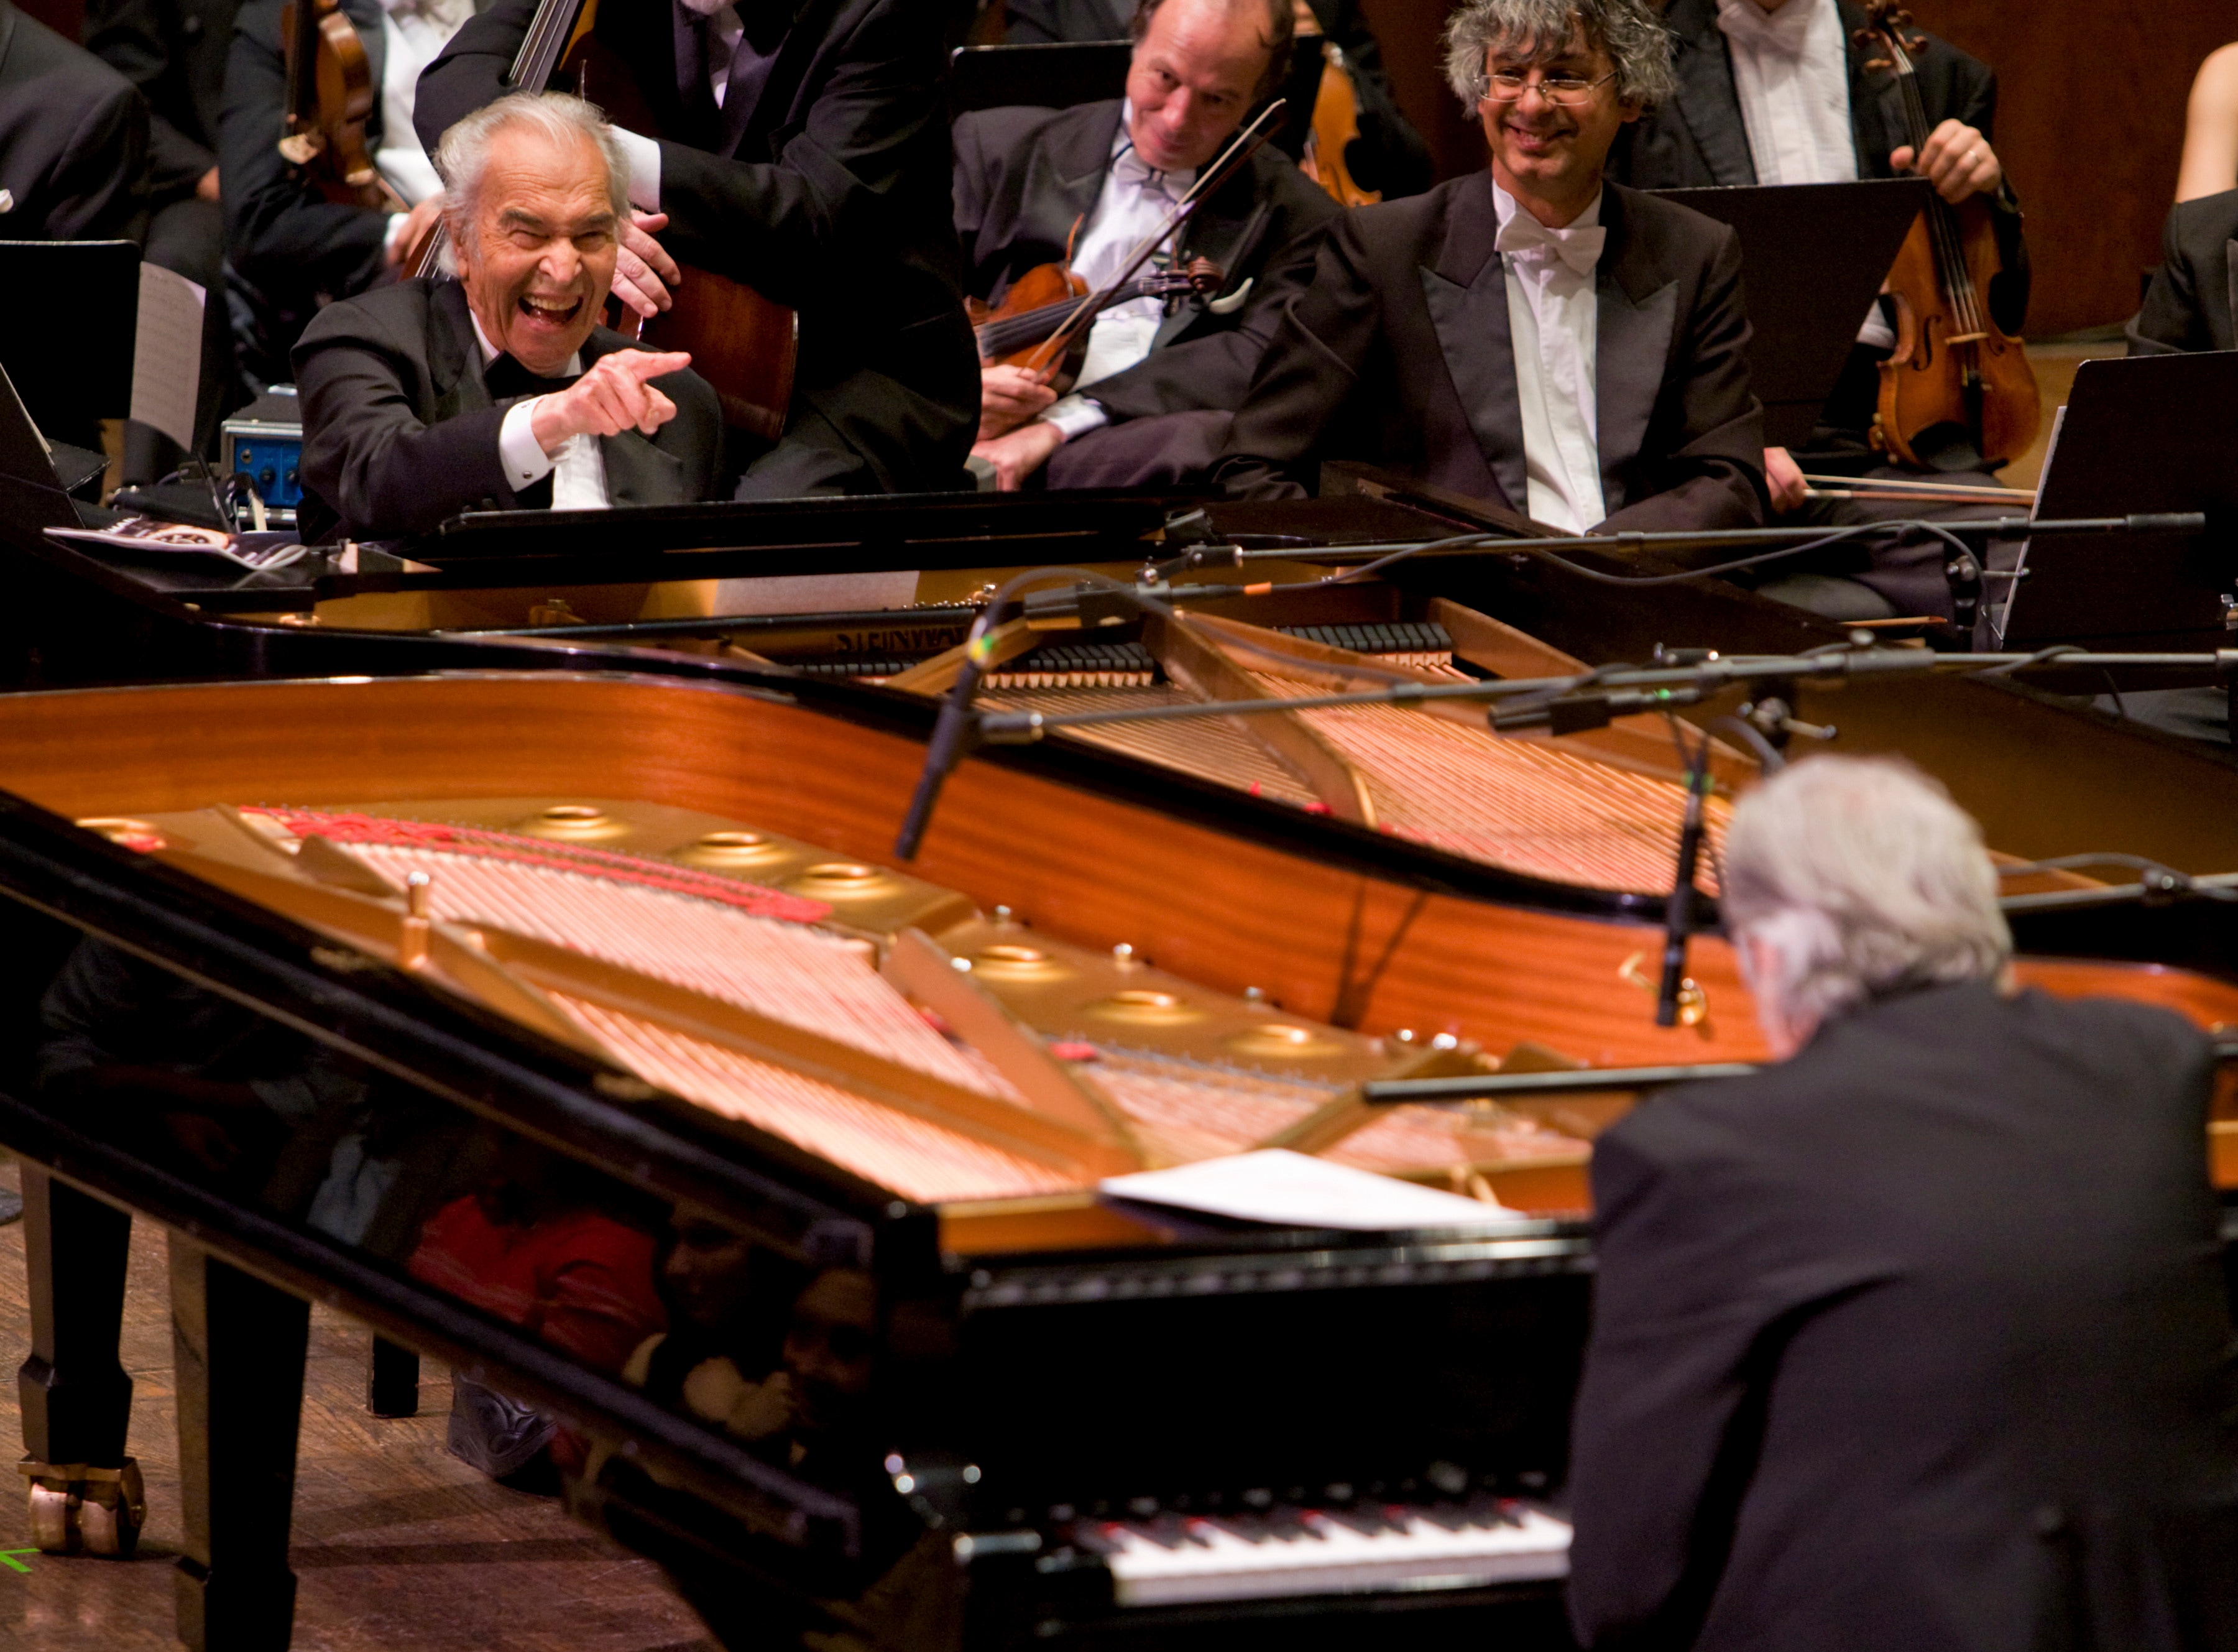 2012. Dave Brubeck e Joao Carlos Martins al pianoforte accanto alla Bachiana Filharmonica presso la Avery Fisher Hall, a New York.